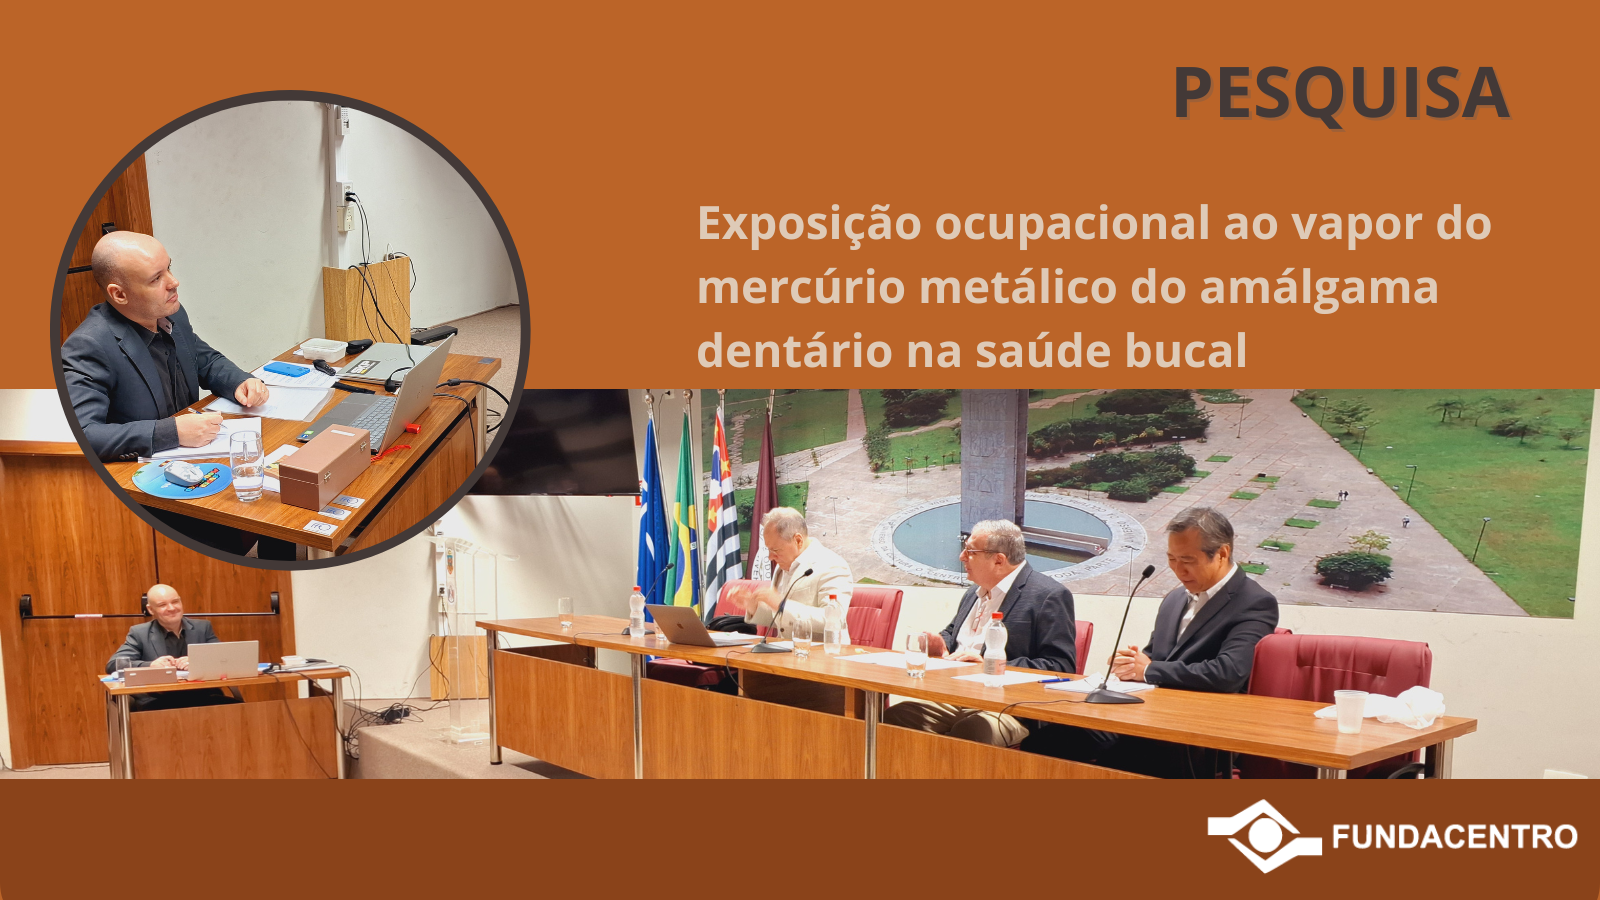 Dissertação de mestrado foi defendida por técnico da Fundacentro na Universidade de São Paulo (USP)